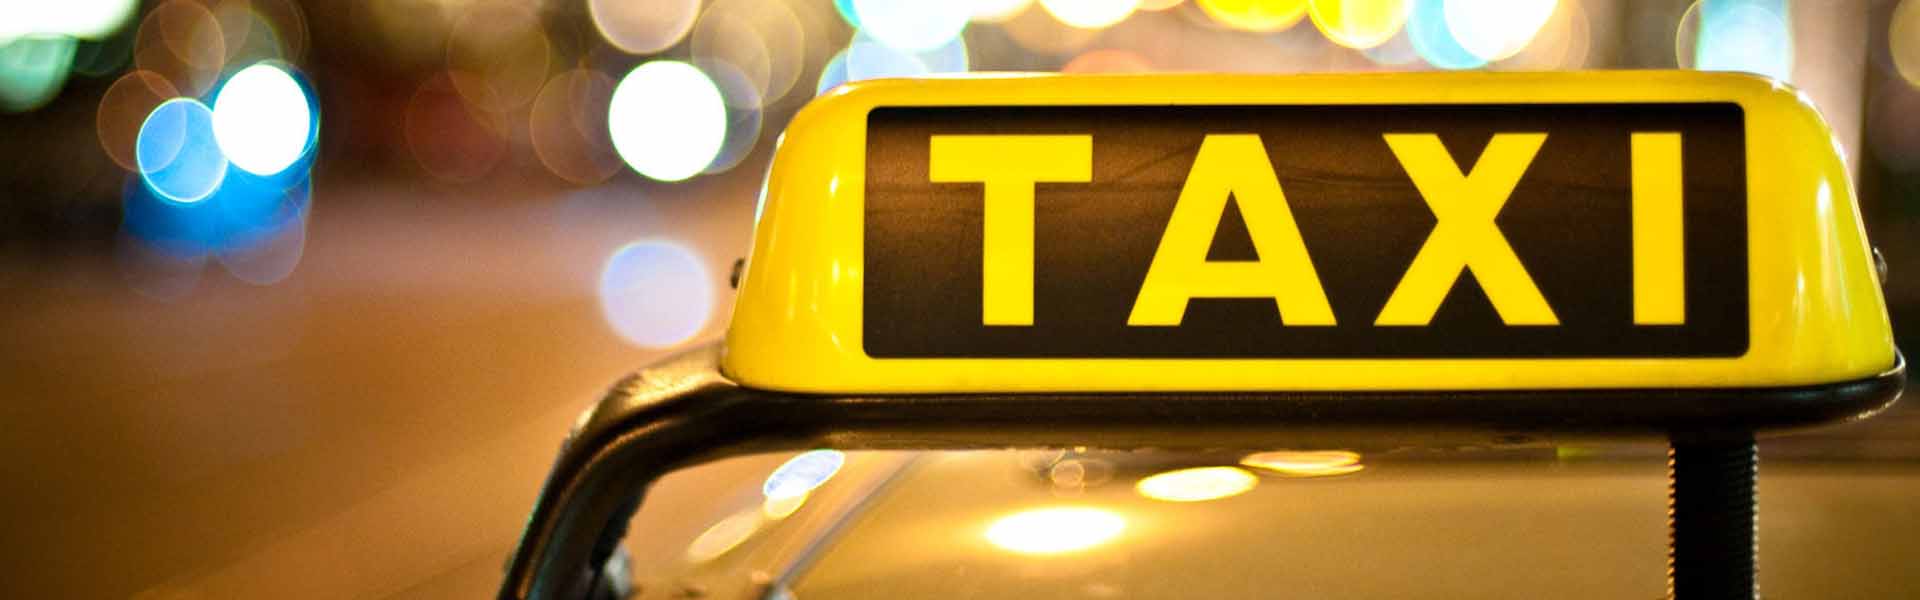 Rent a car ili taksi - za šta se odlučiti?